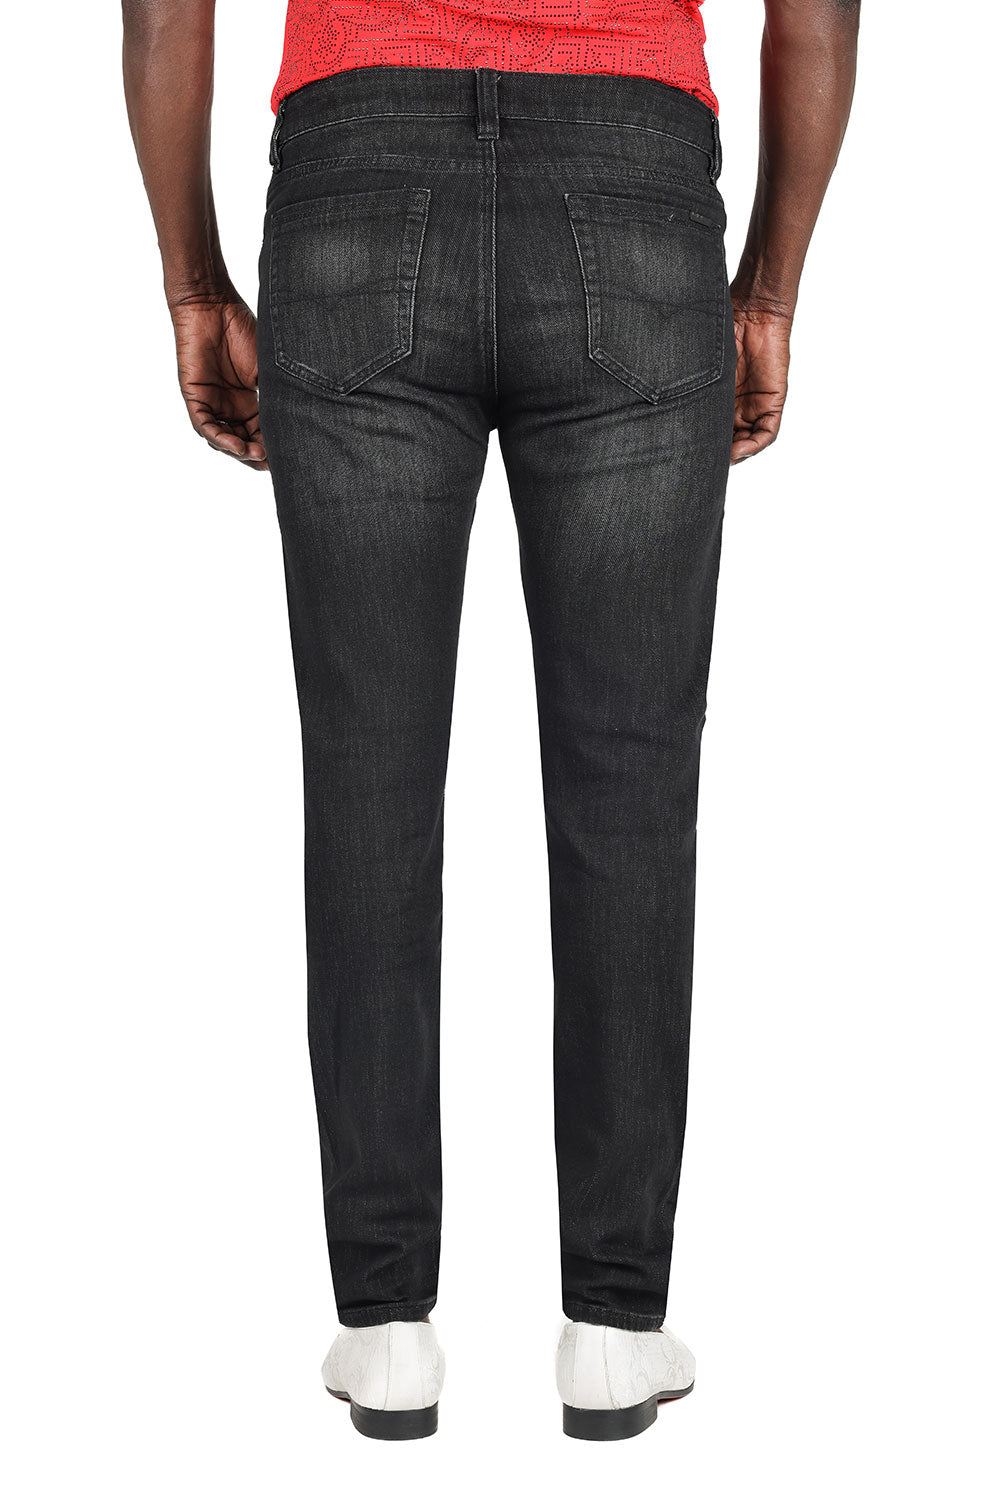 Barabas Men's Washed Black Premium Denim Jeans 2JE01SL